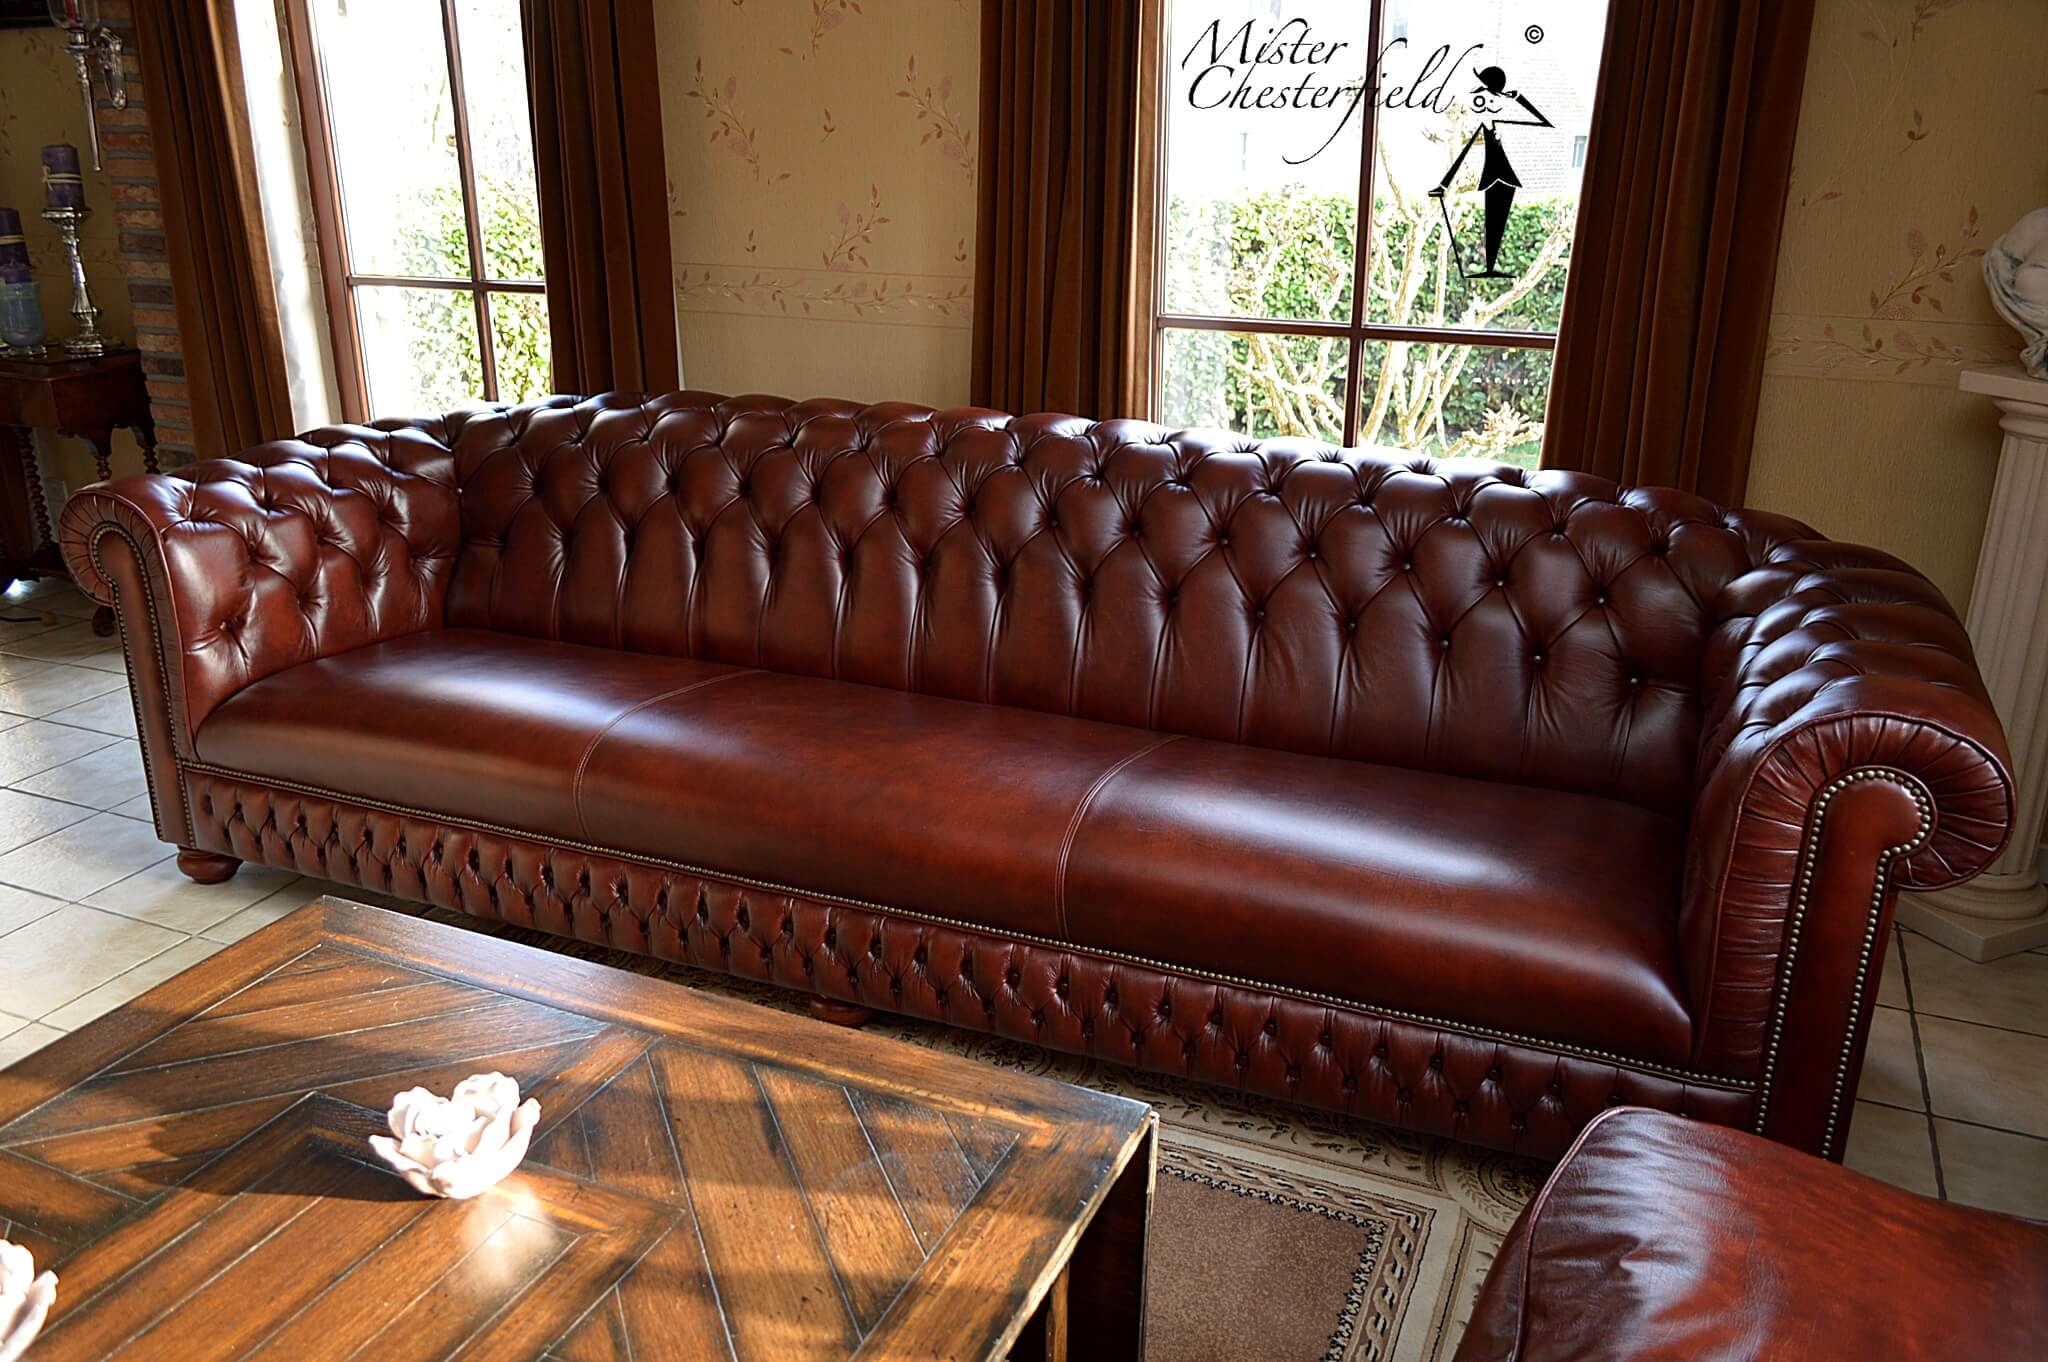 chesterfield-asiento-llano-opción-completa-leeds-original-británico-muebles